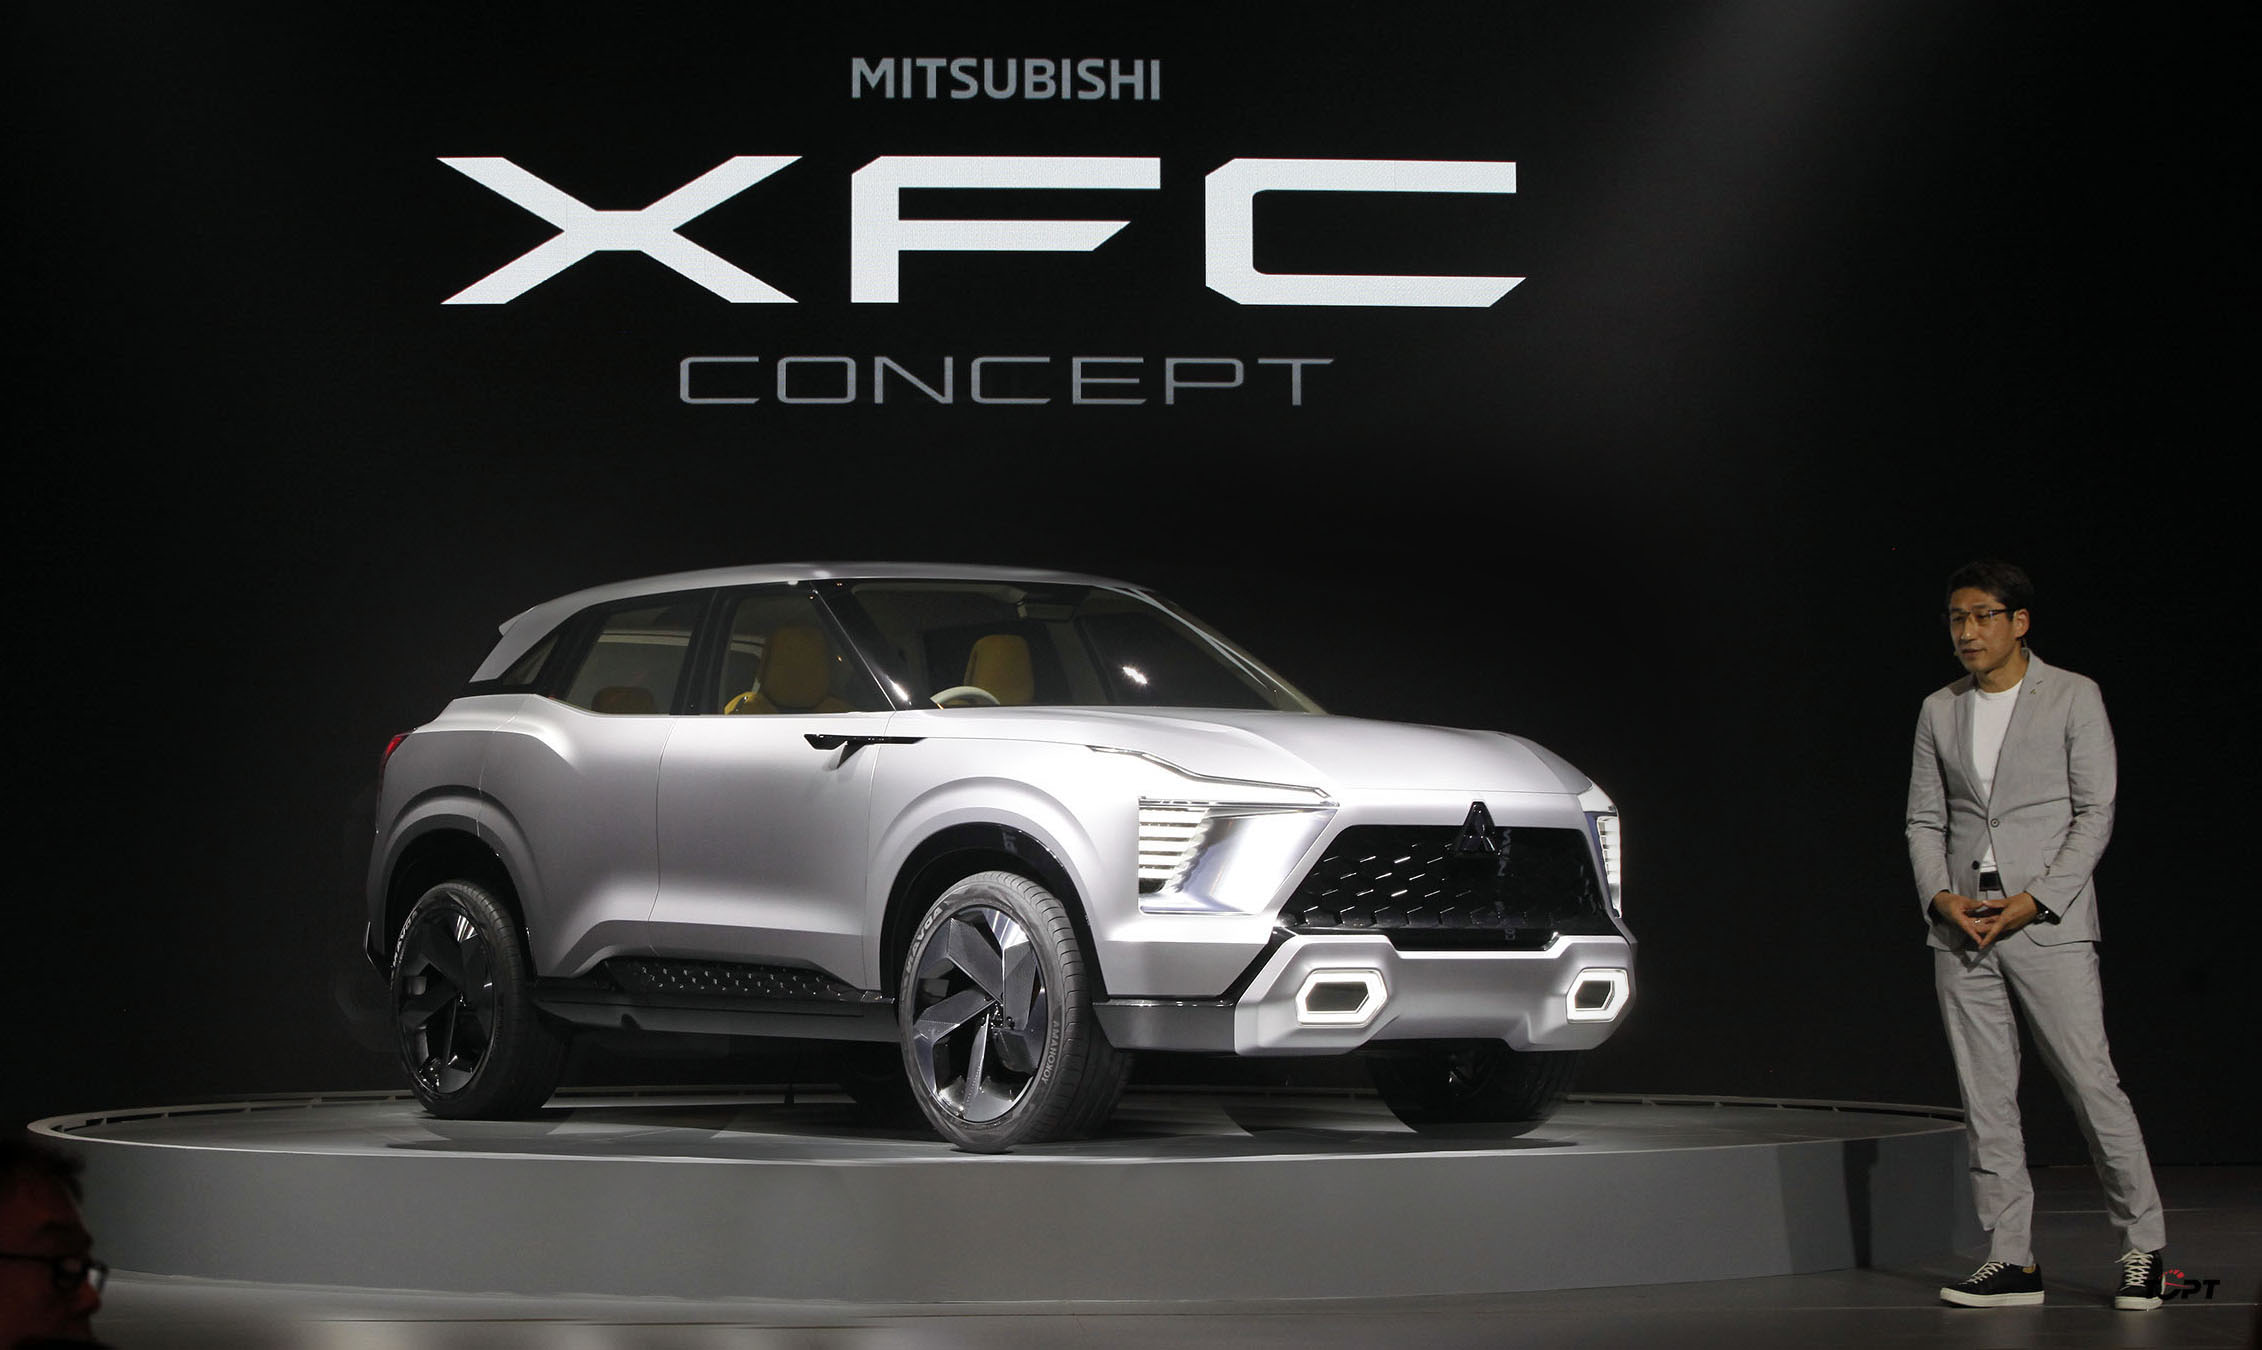 Mitsubishi XFC bản thương mại sắp ra mắt tại Indonesia, bắt tay cùng Yamaha?